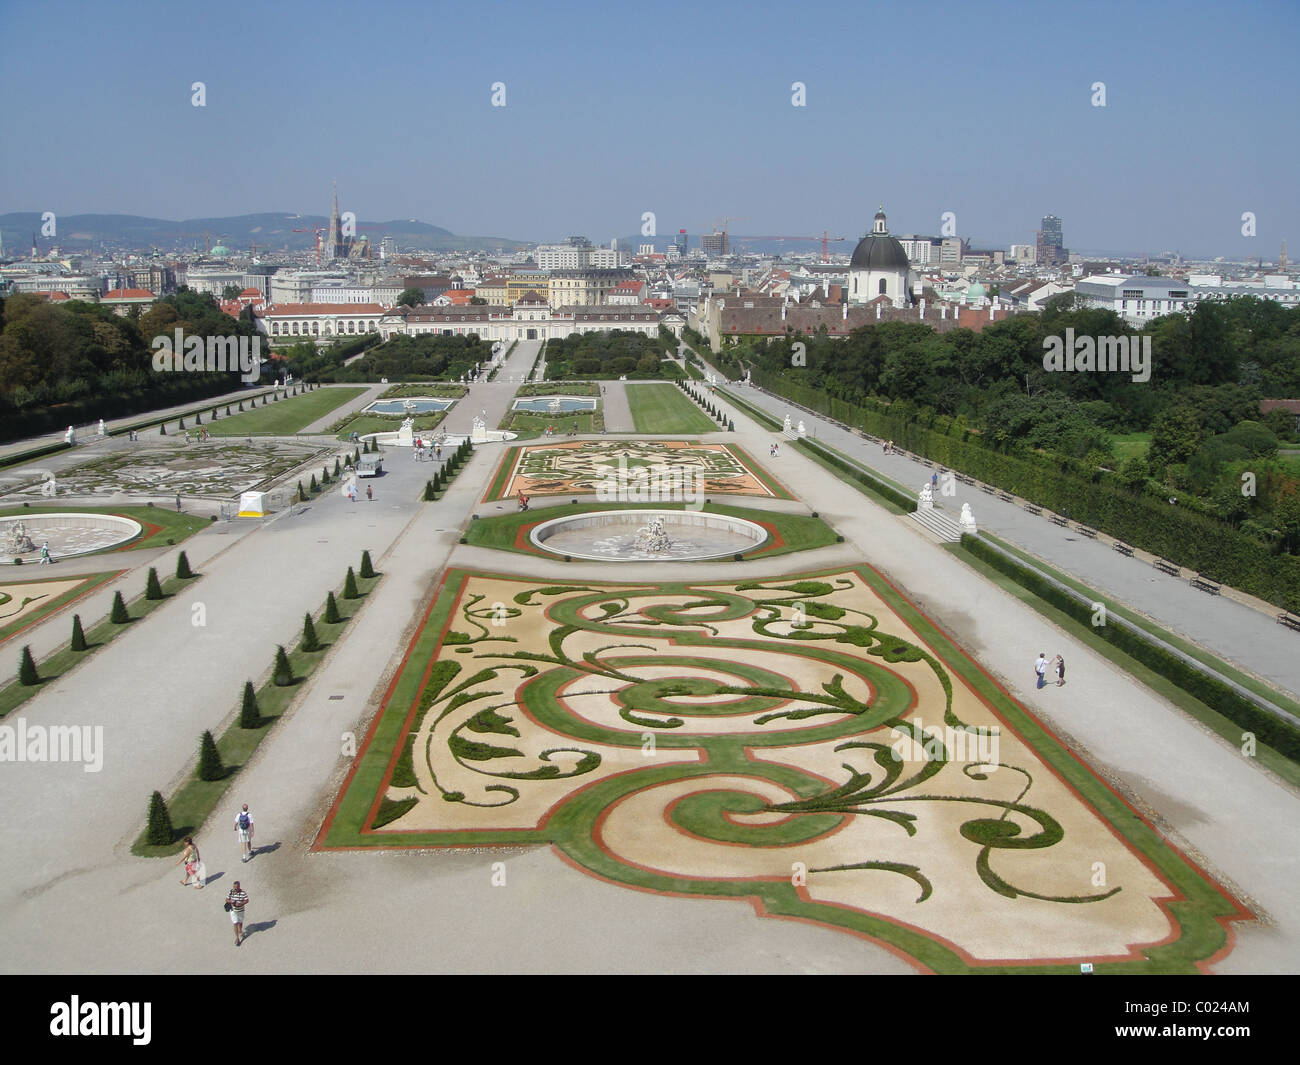 Schloss Schönbrunn gardens in Vienna with the city in the background Stock Photo